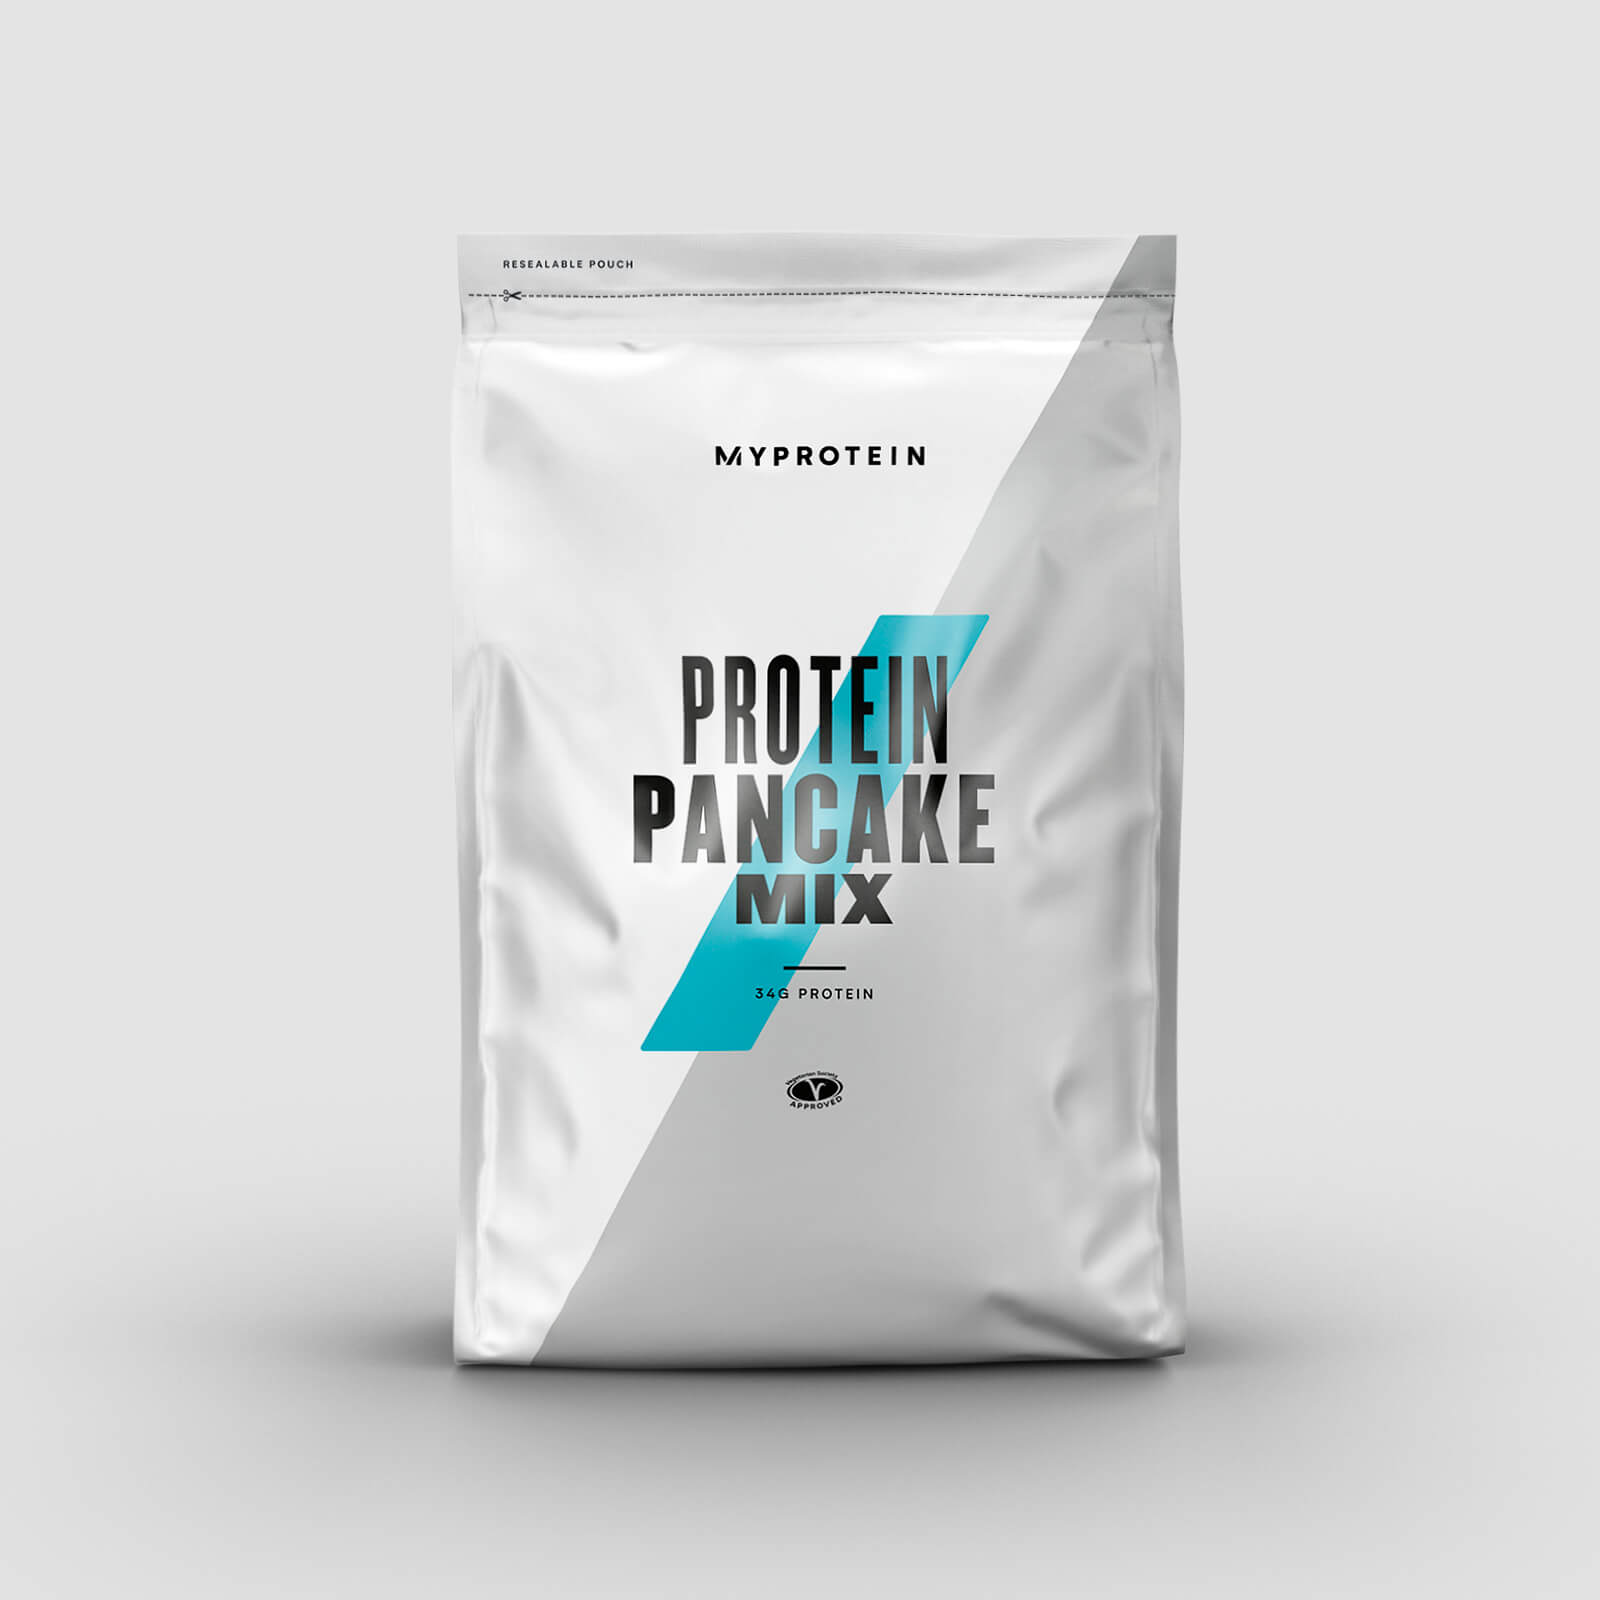 Myprotein Protein Pancake Mix - 200g - Golden Syrup